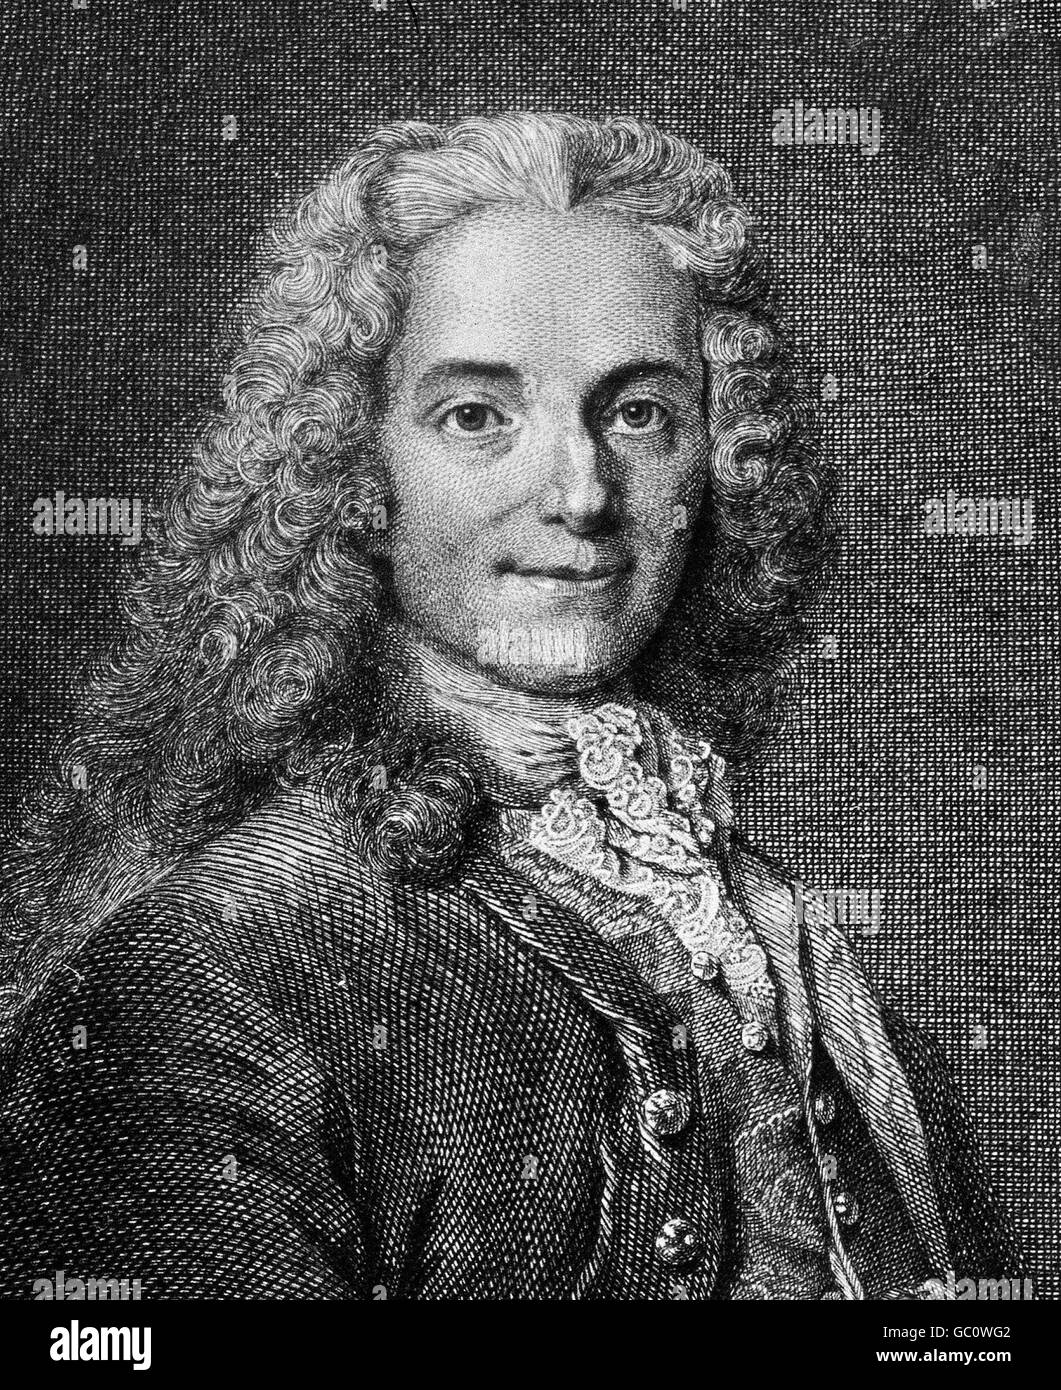 Voltaire (François-Marie Arouet : 1694-1778), l'écrivain et philosophe des Lumières françaises. Gravure de François-Joseph-Etienne Beisson, c.1785-1789, à partir d'une peinture de Nicolas de Largillierre, c.1724-1725 Banque D'Images